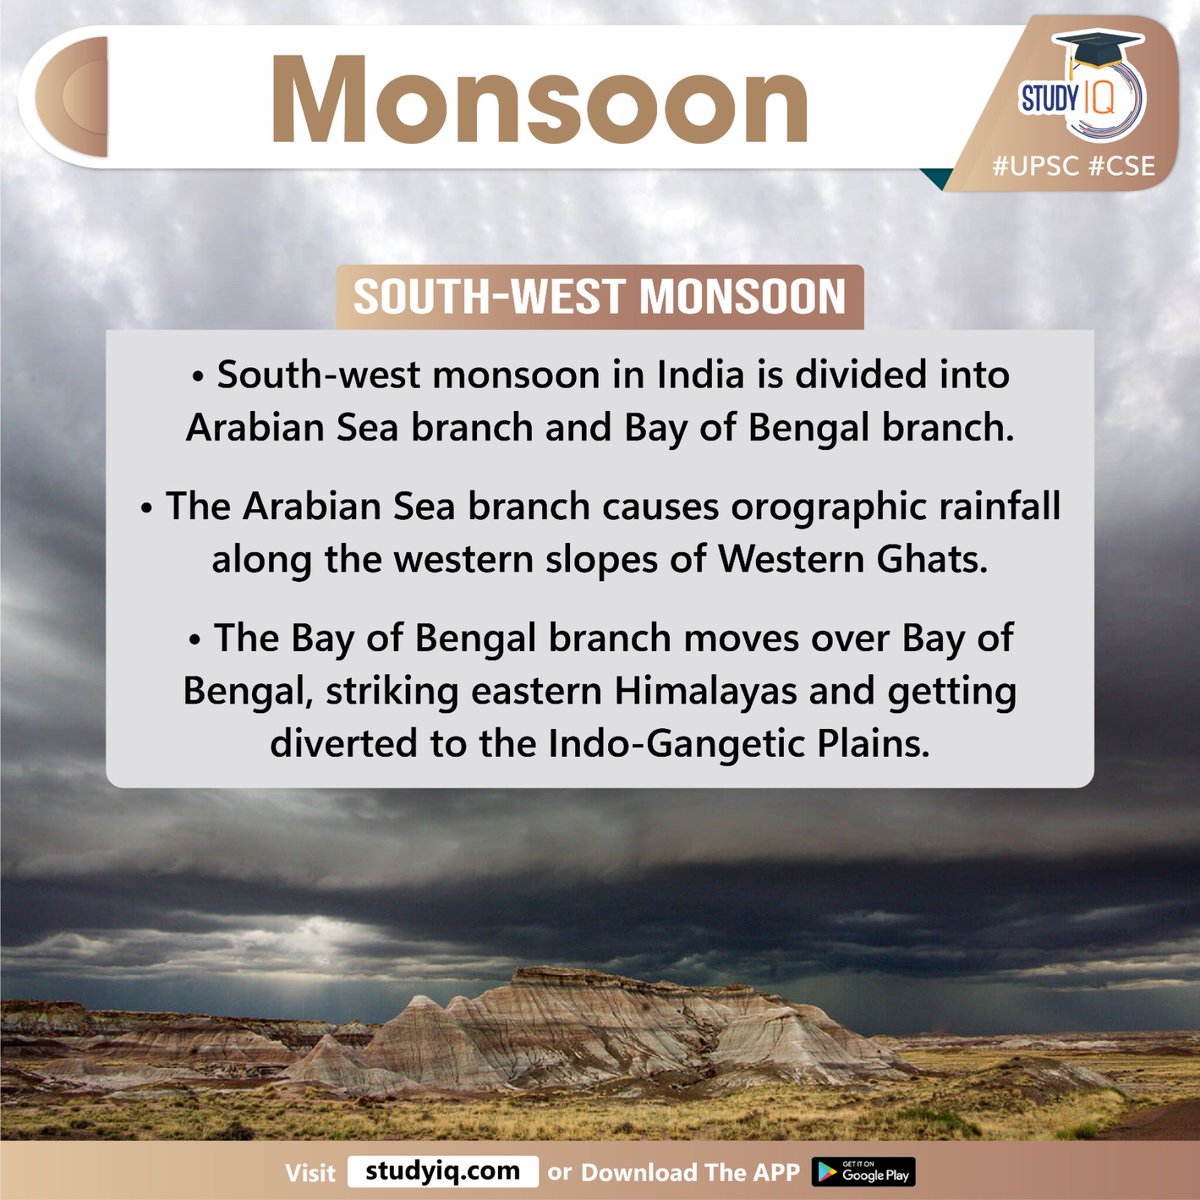 Monsoon

#monsoon #kerala #southwestmonsoon #whyinnews #intertropicalconvergencezone #itcz #monsooninindia #india #dryphase #monsoonrains #rainfall #arabiansea #bayofbengal #westernghats #orographicrainfall #himalayas #indogangeticplains #upsc #cse #ips #ias